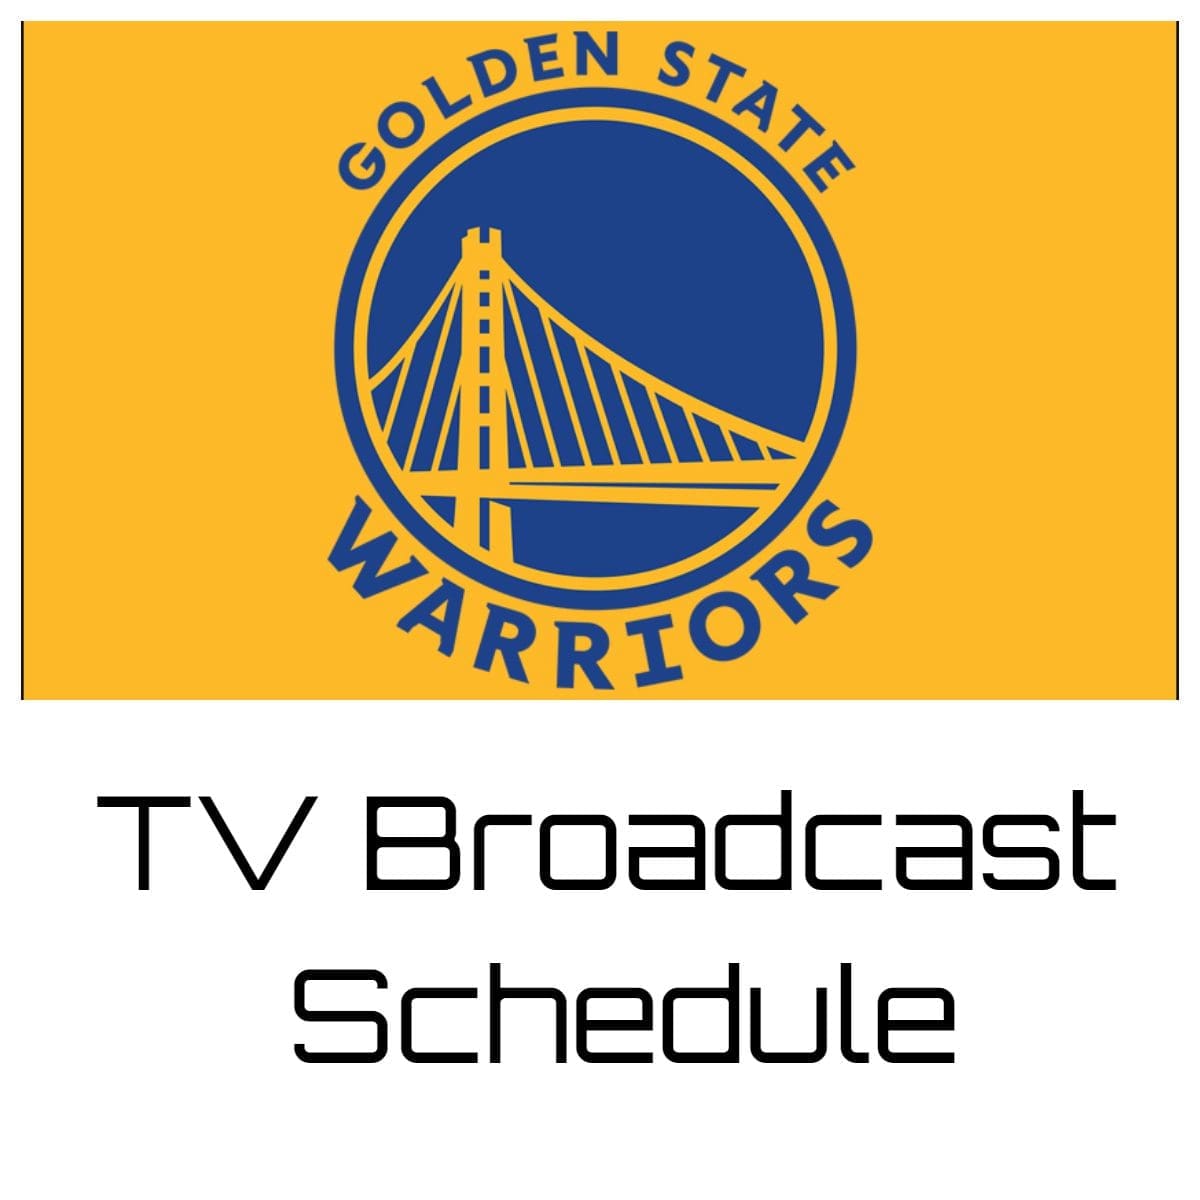 Golden State Warriors TV Broadcast Schedule